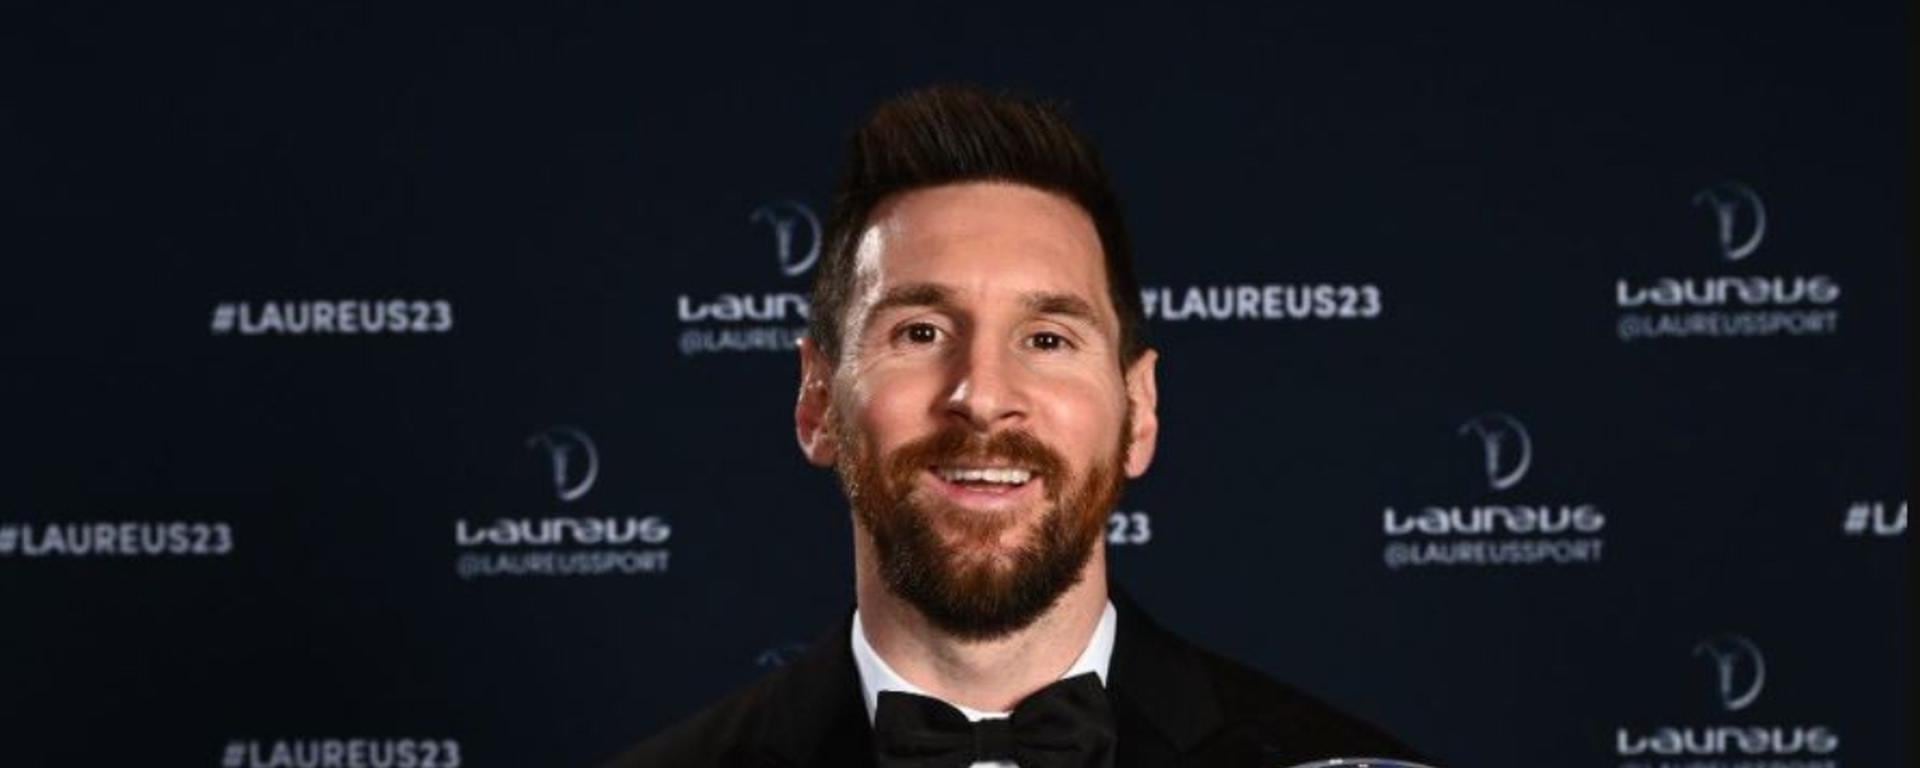 Lionel Messi: por qué el “The Laureus” lo sitúa como el mejor de todos y qué premios le falta ganar